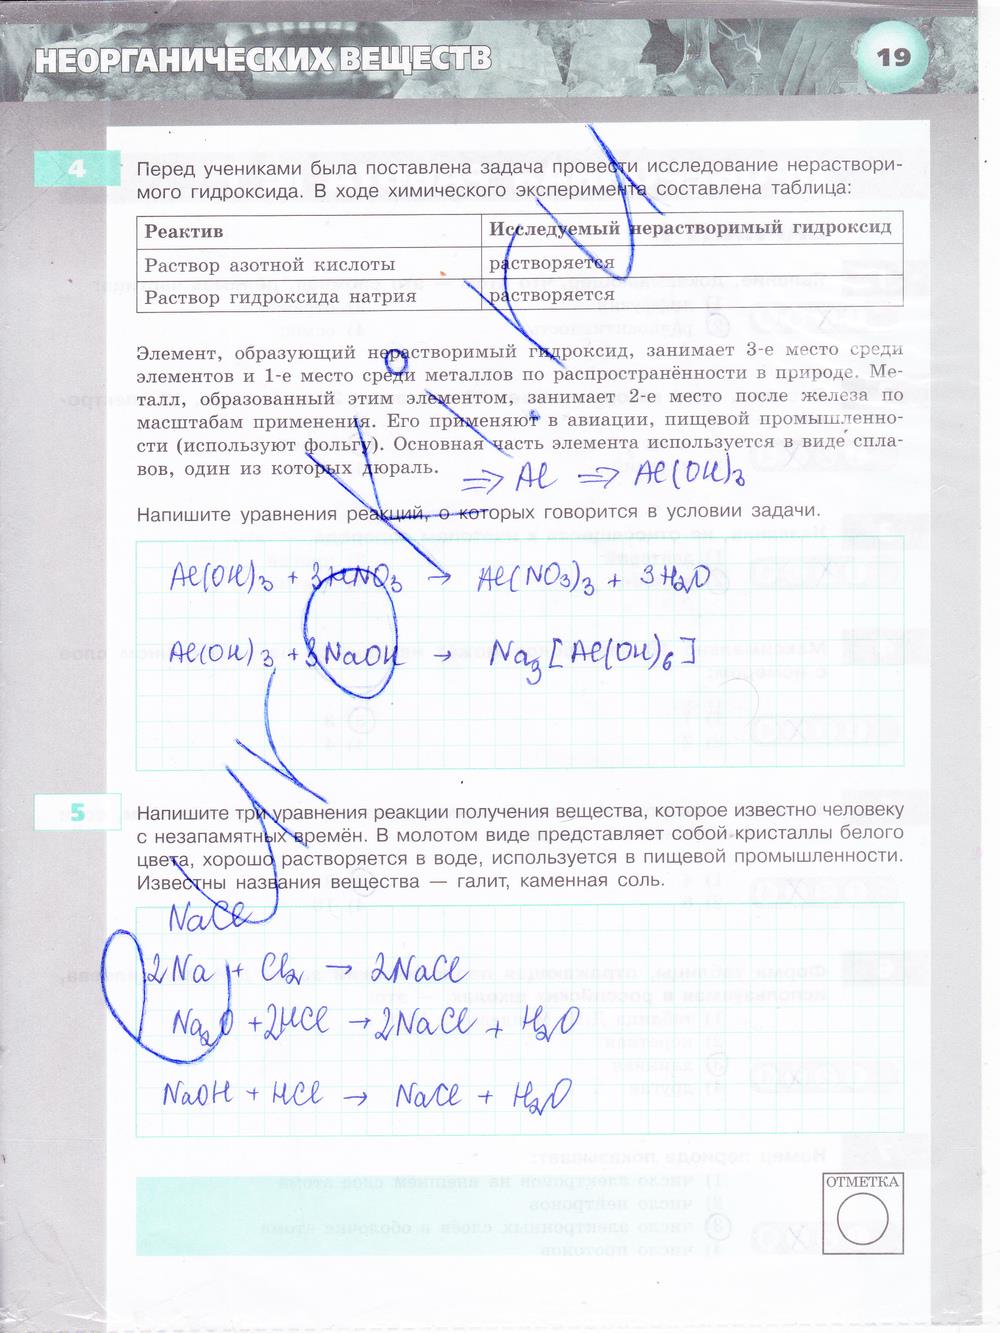 гдз 8 класс тетрадь-экзаменатор страница 19 химия Бобылева, Бирюлина